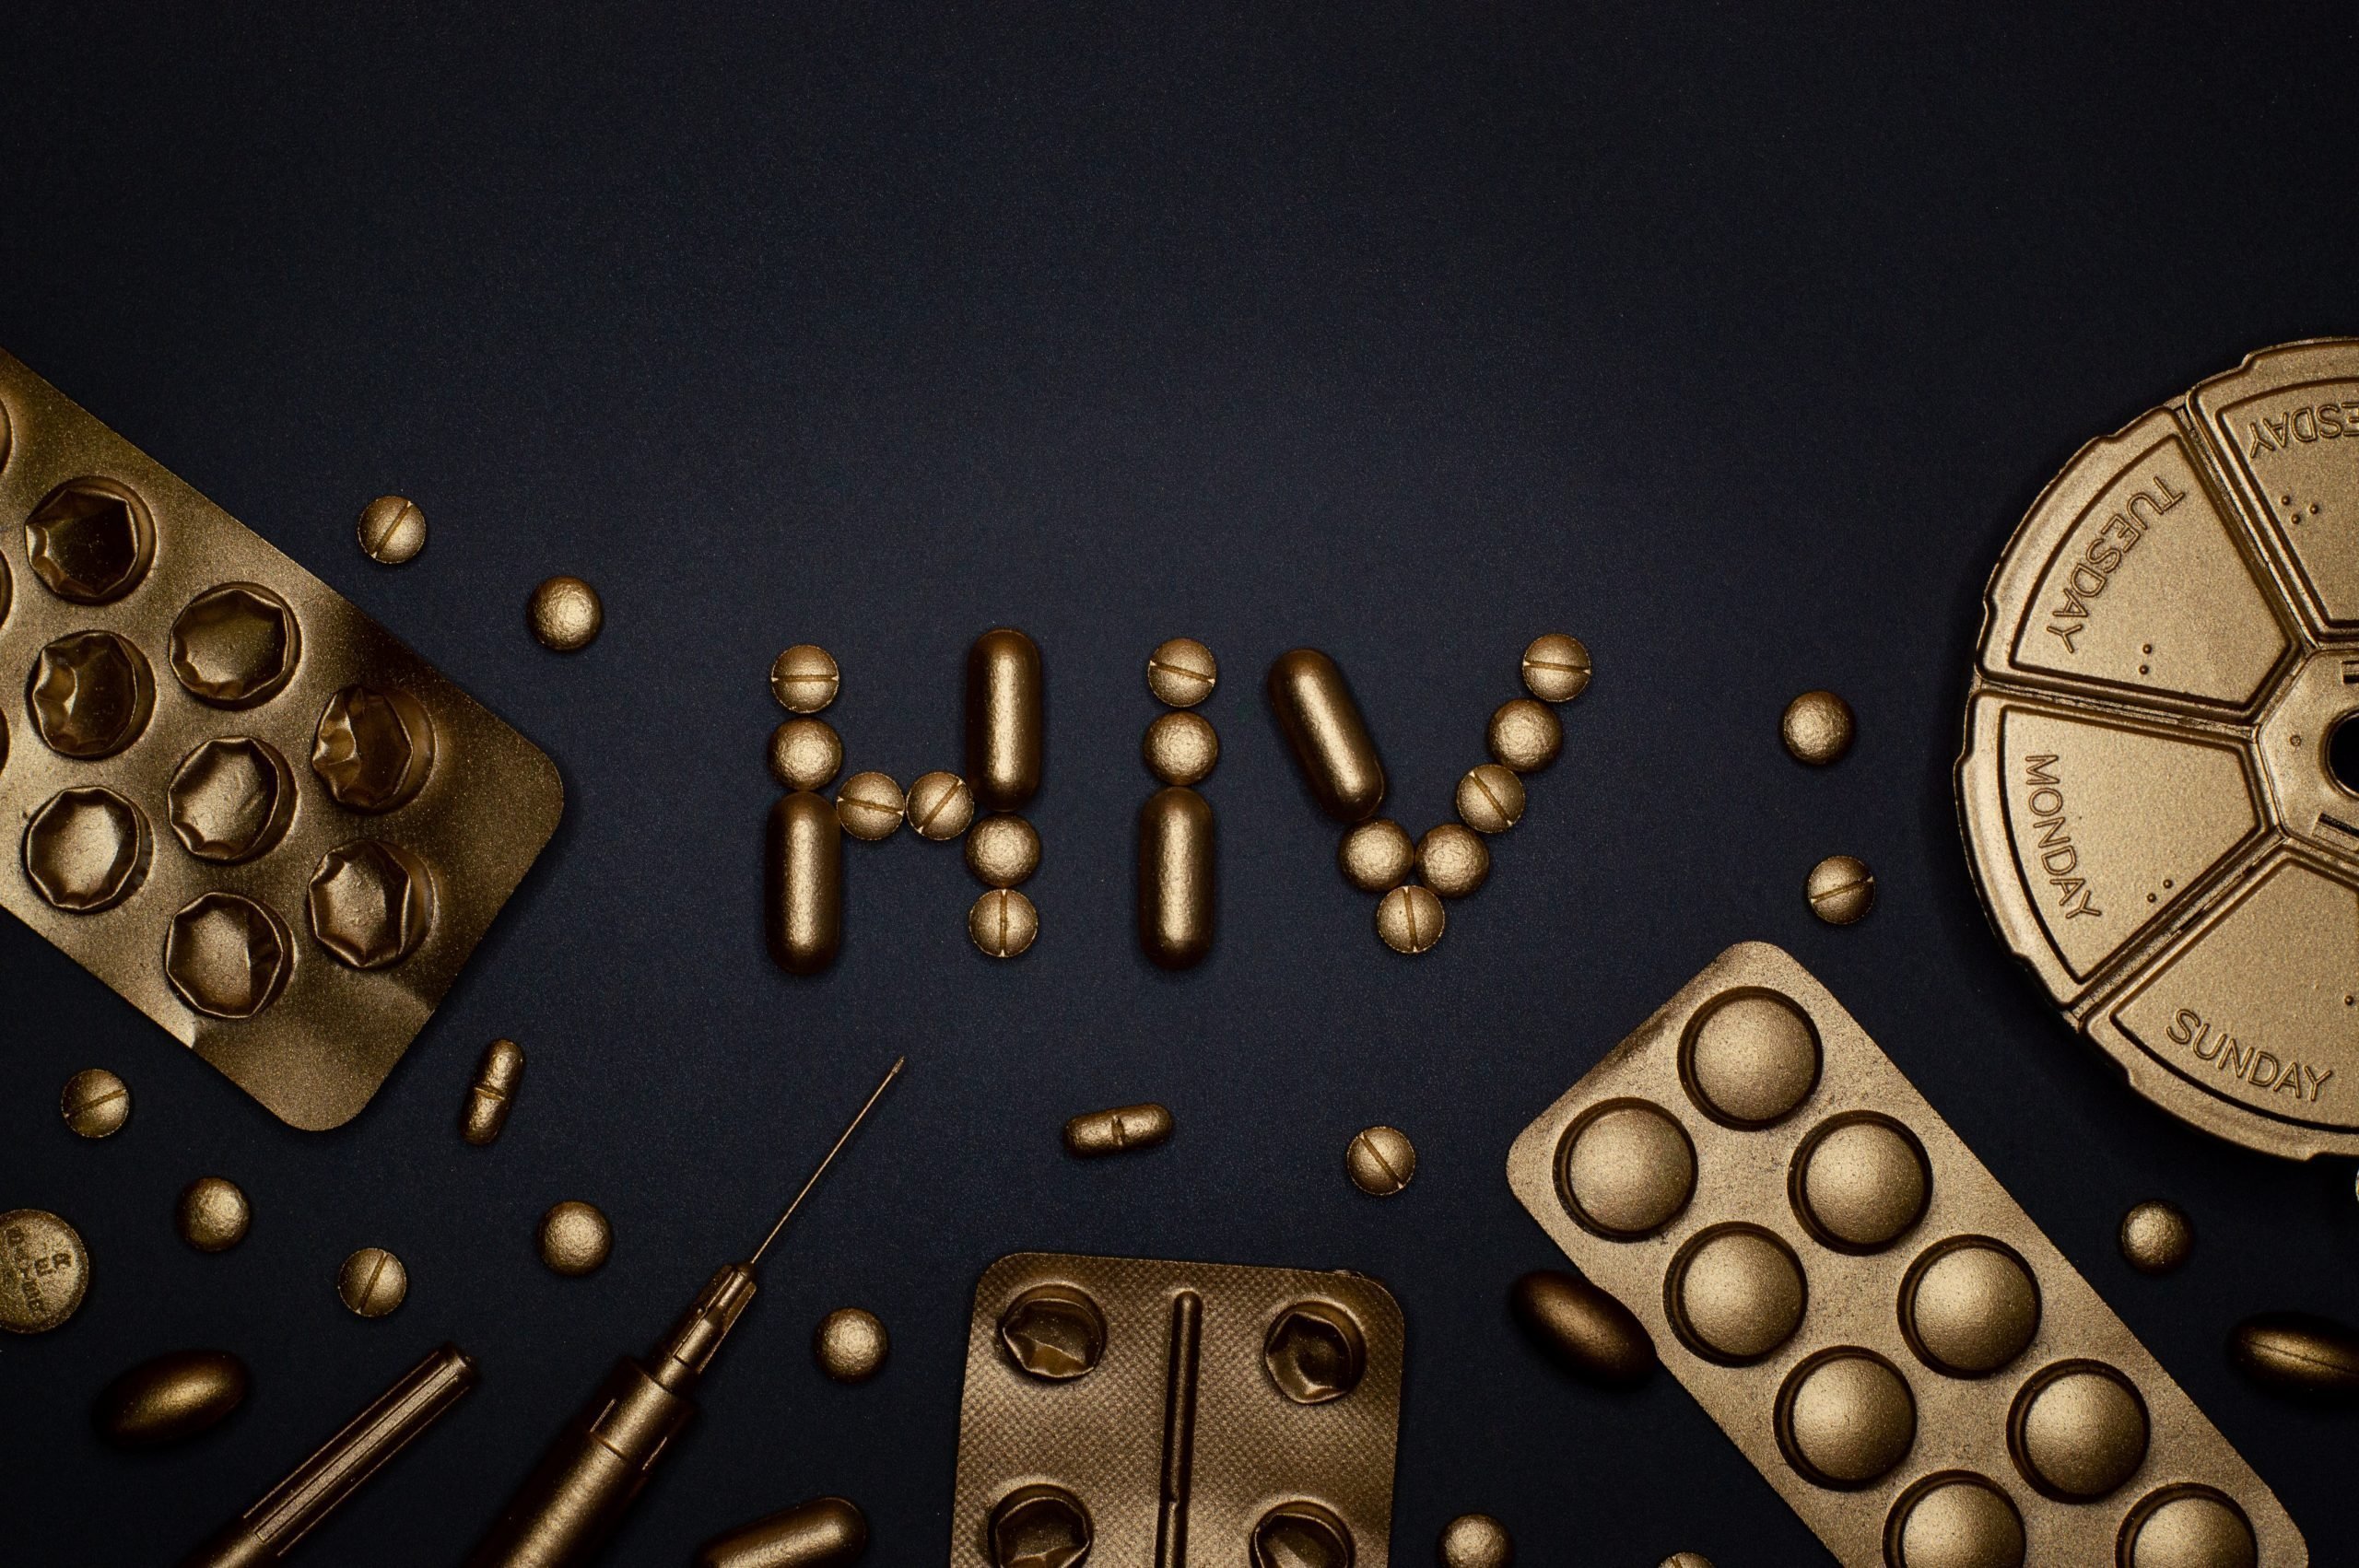 O nouă variantă de HIV, mai virulentă, a fost identificată în Ţările de Jos